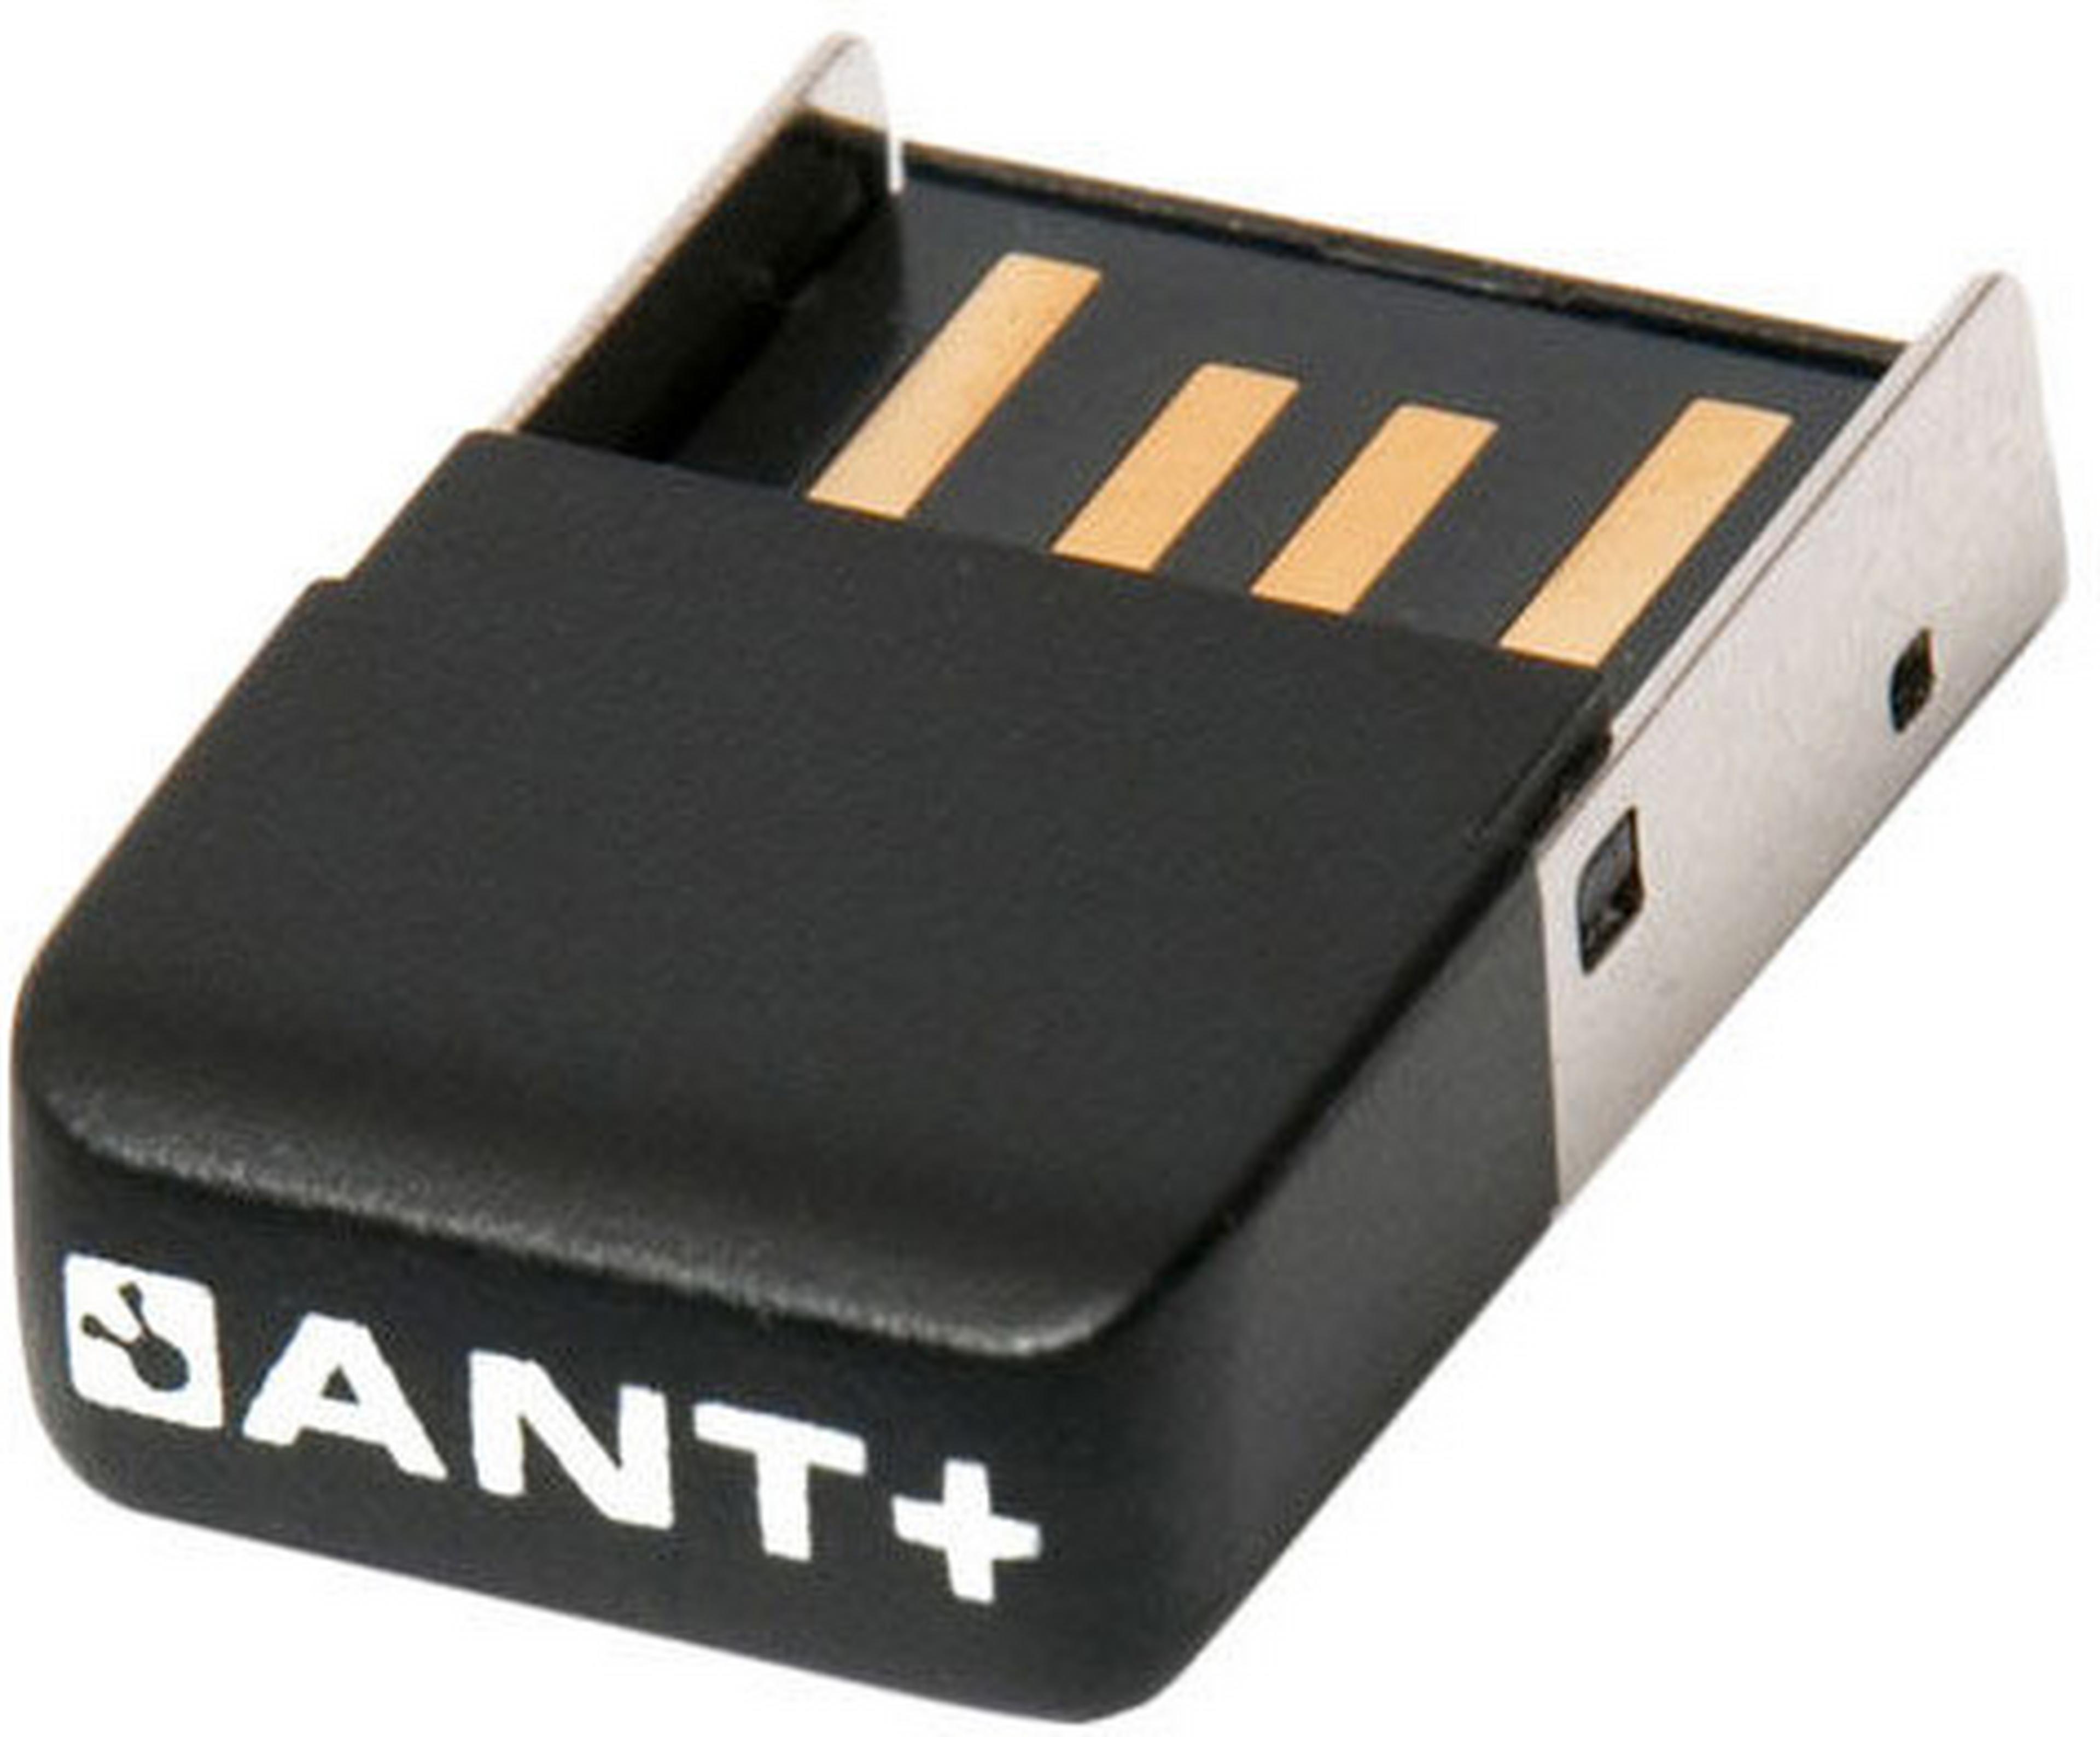 Clé USB ANT+